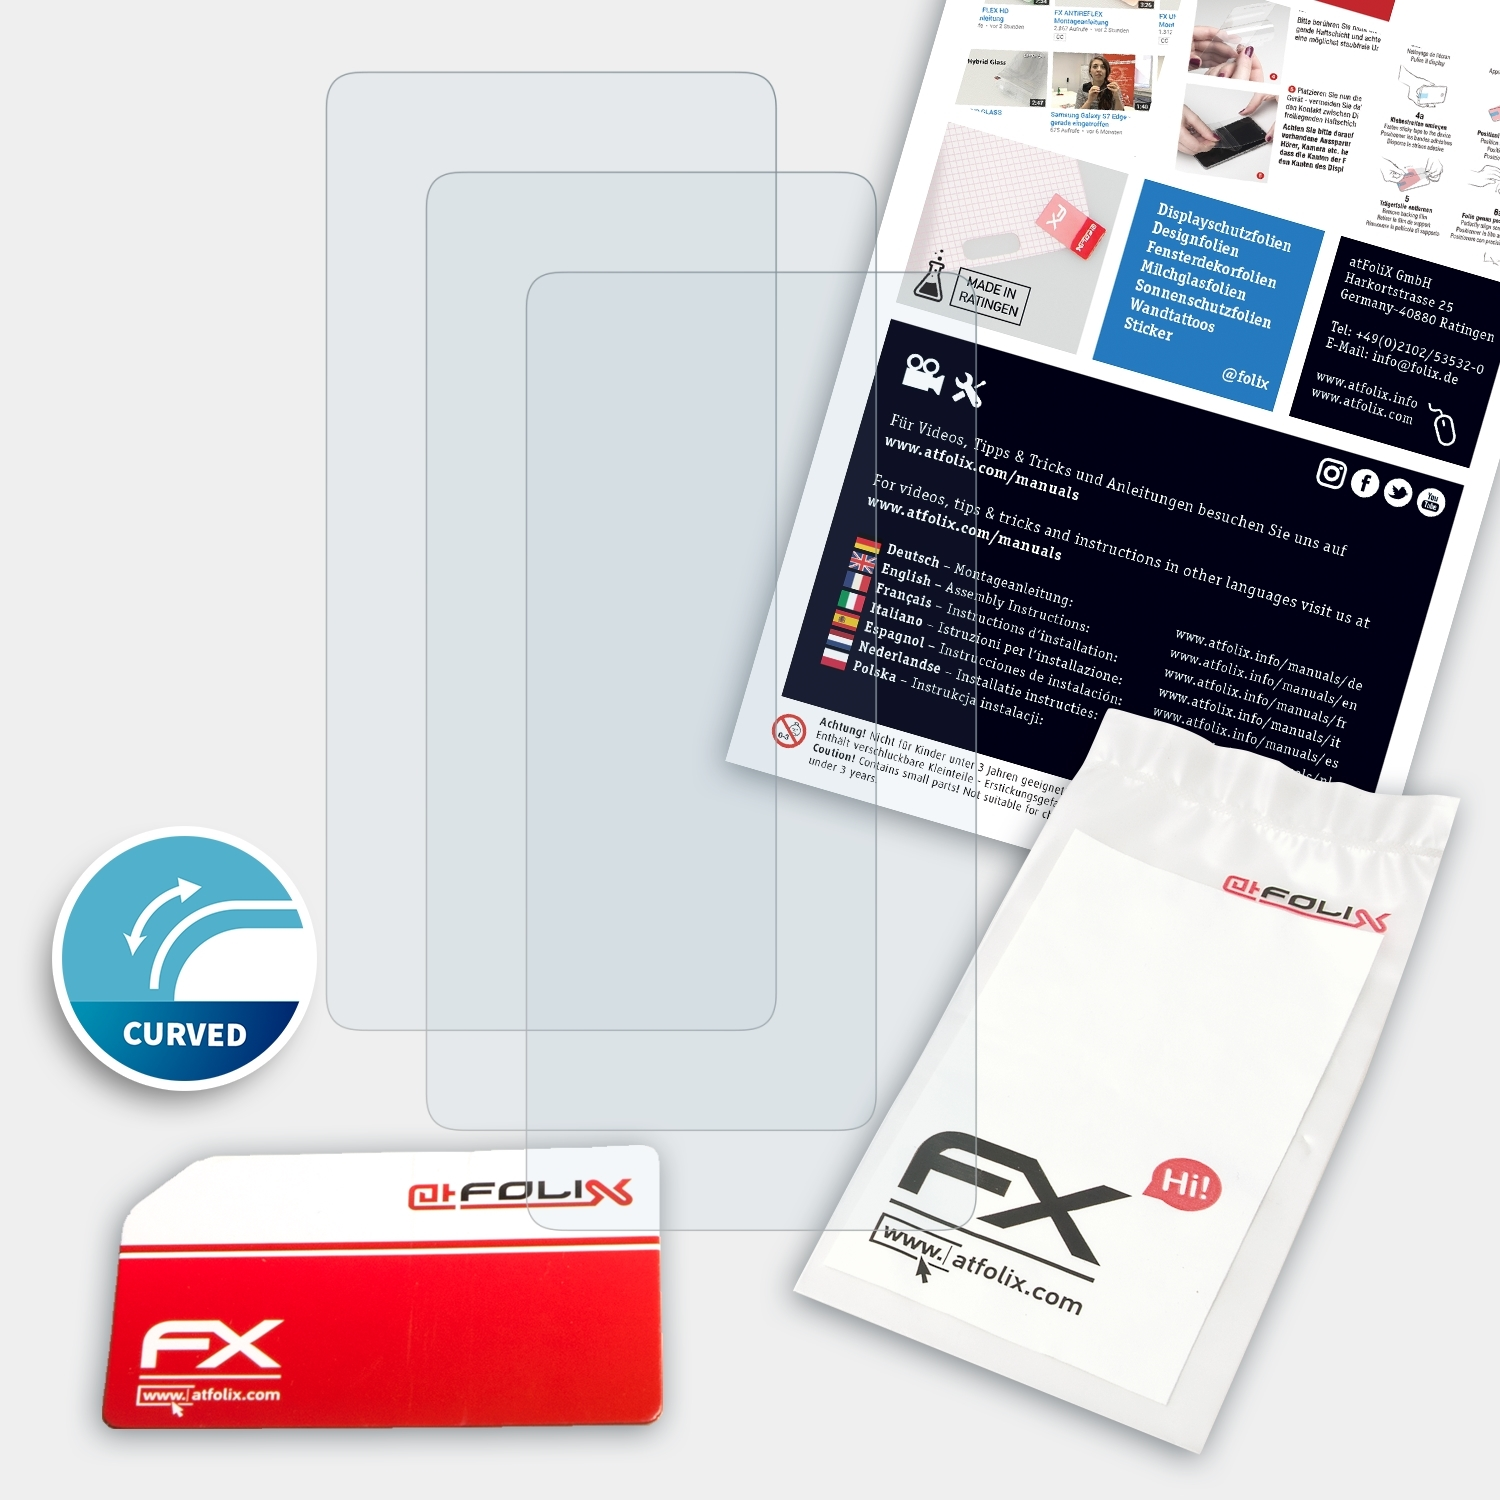 ATFOLIX 3x FX-ActiFleX Displayschutz(für Nex 5G) Vivo 3